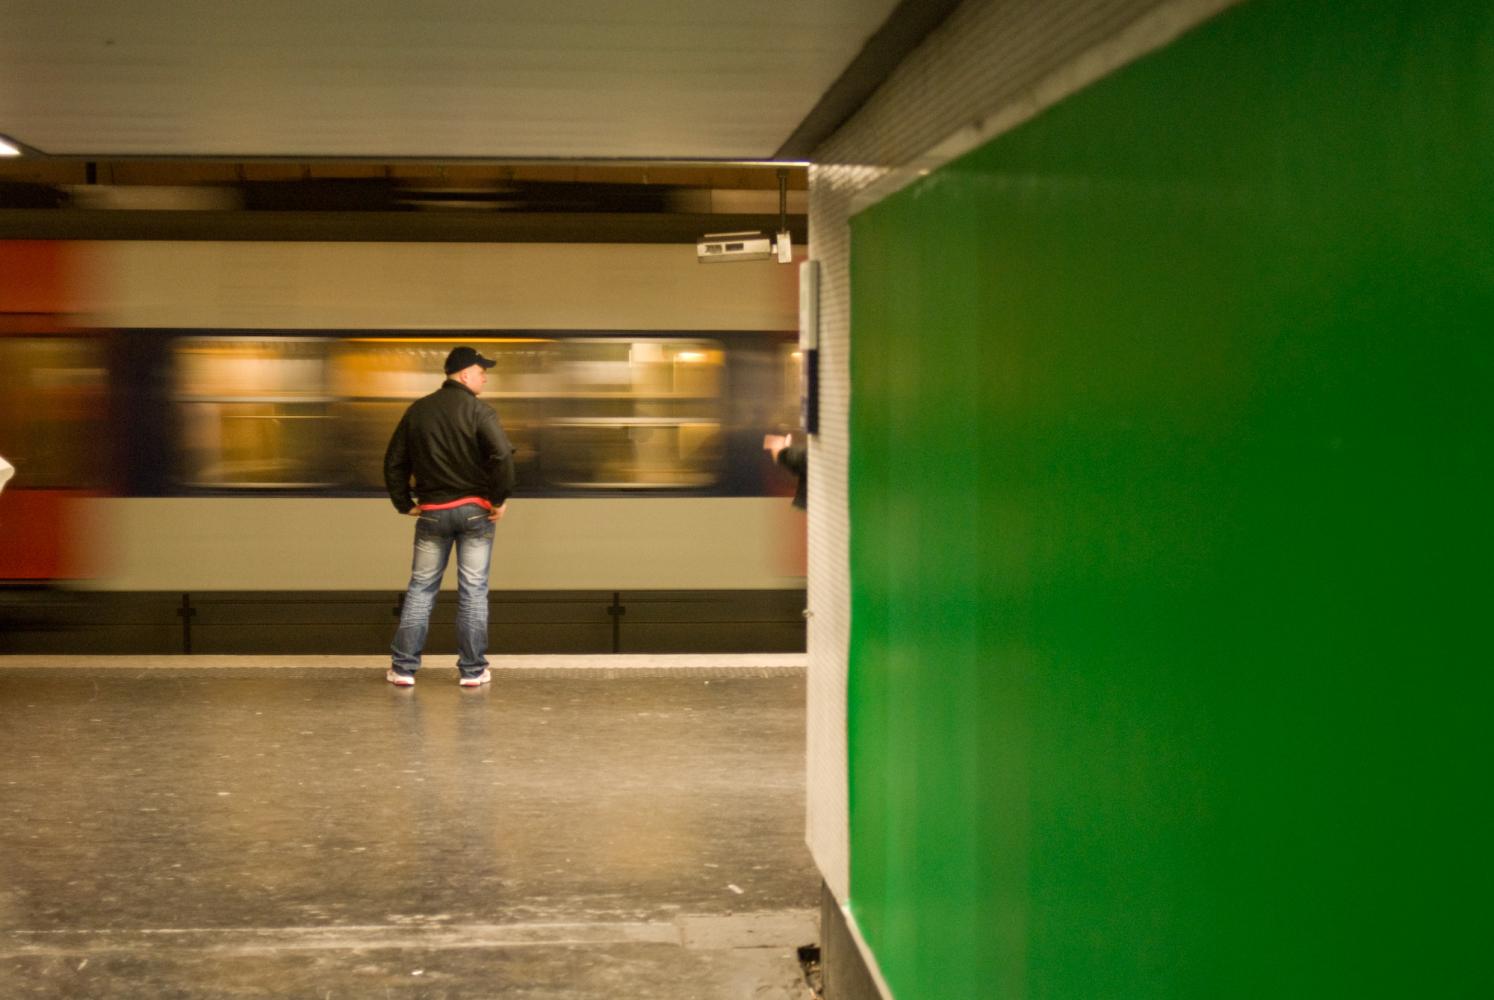 Sur le quai de RER à Nation, derrière le mur vert d'un couloir, un homme en jeans et casquette regarde passer un train. Paris, novembre 2009.